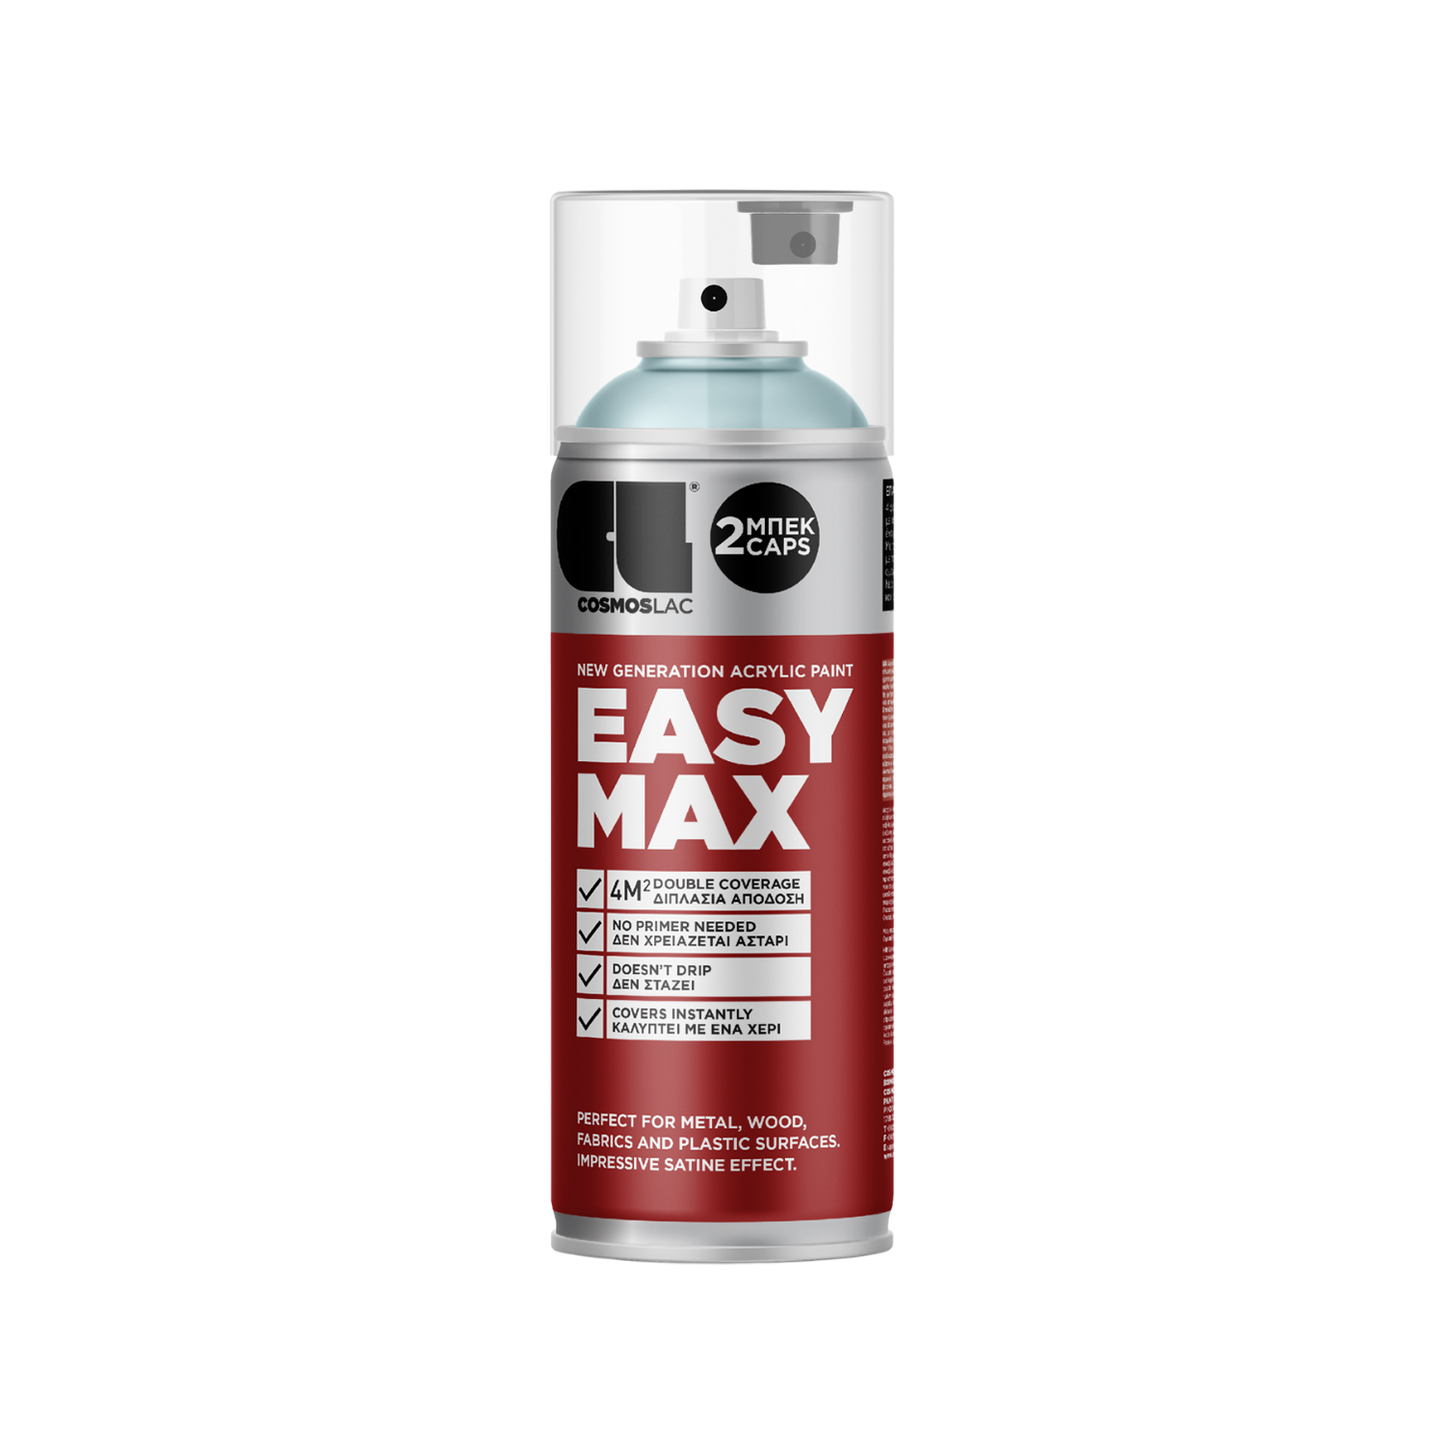 COSMOS LAC EASY MAX Premium Acryllack Sprühlack zum Upcycling und DIY Projekten von Möbeln und Dekoobjekten 